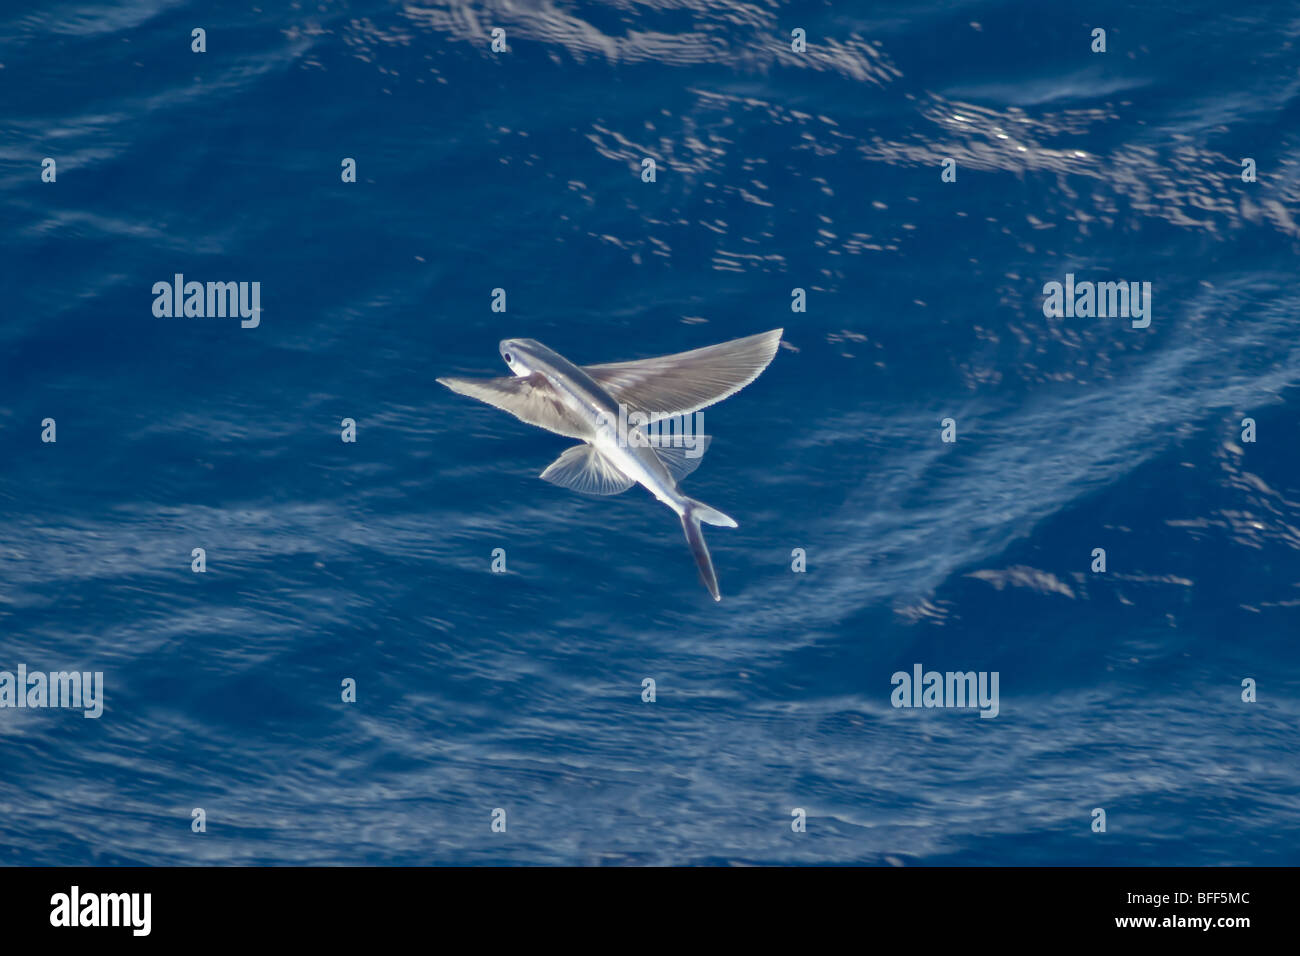 Les espèces de poissons volants dans les airs, nom scientifique inconnu, Sud de l'océan Atlantique. Banque D'Images